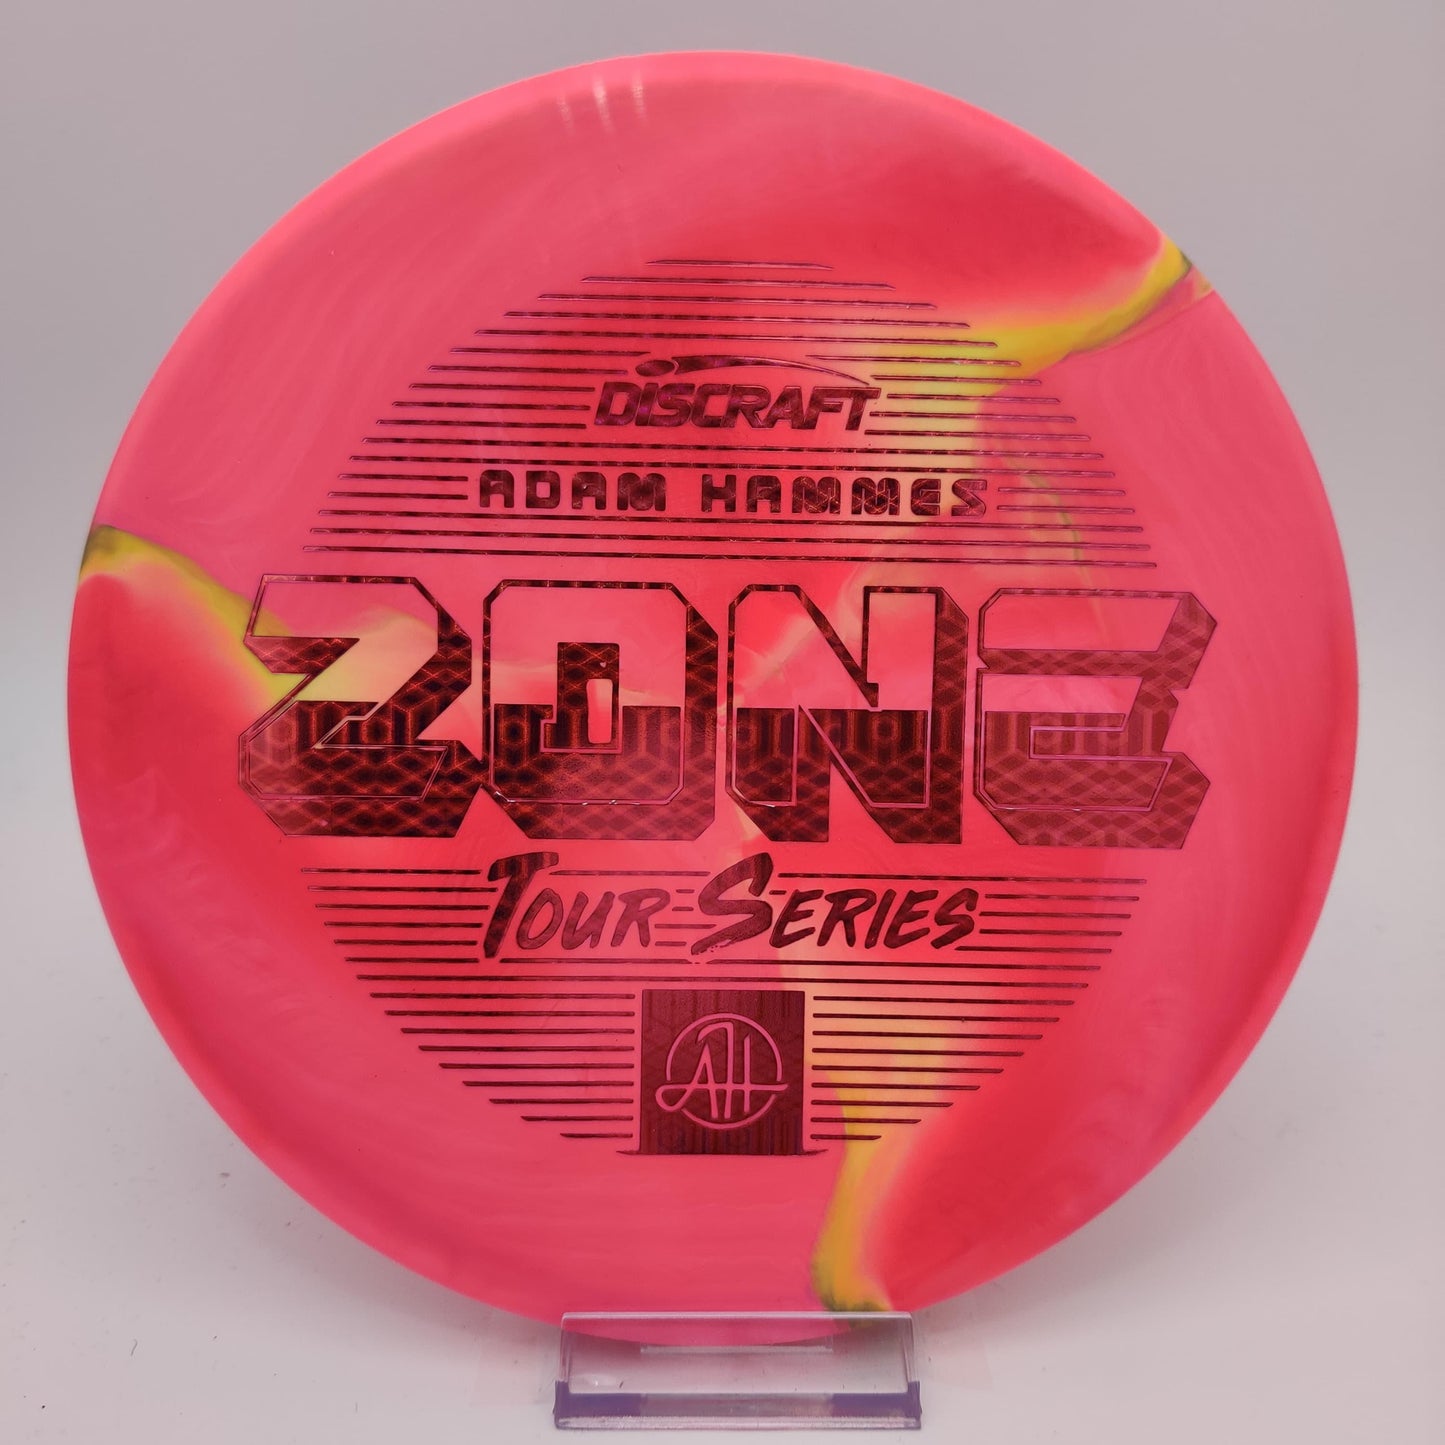 Discraft Adam Hammes ESP Zone - 2022 Tour Series - Disc Golf Deals USA